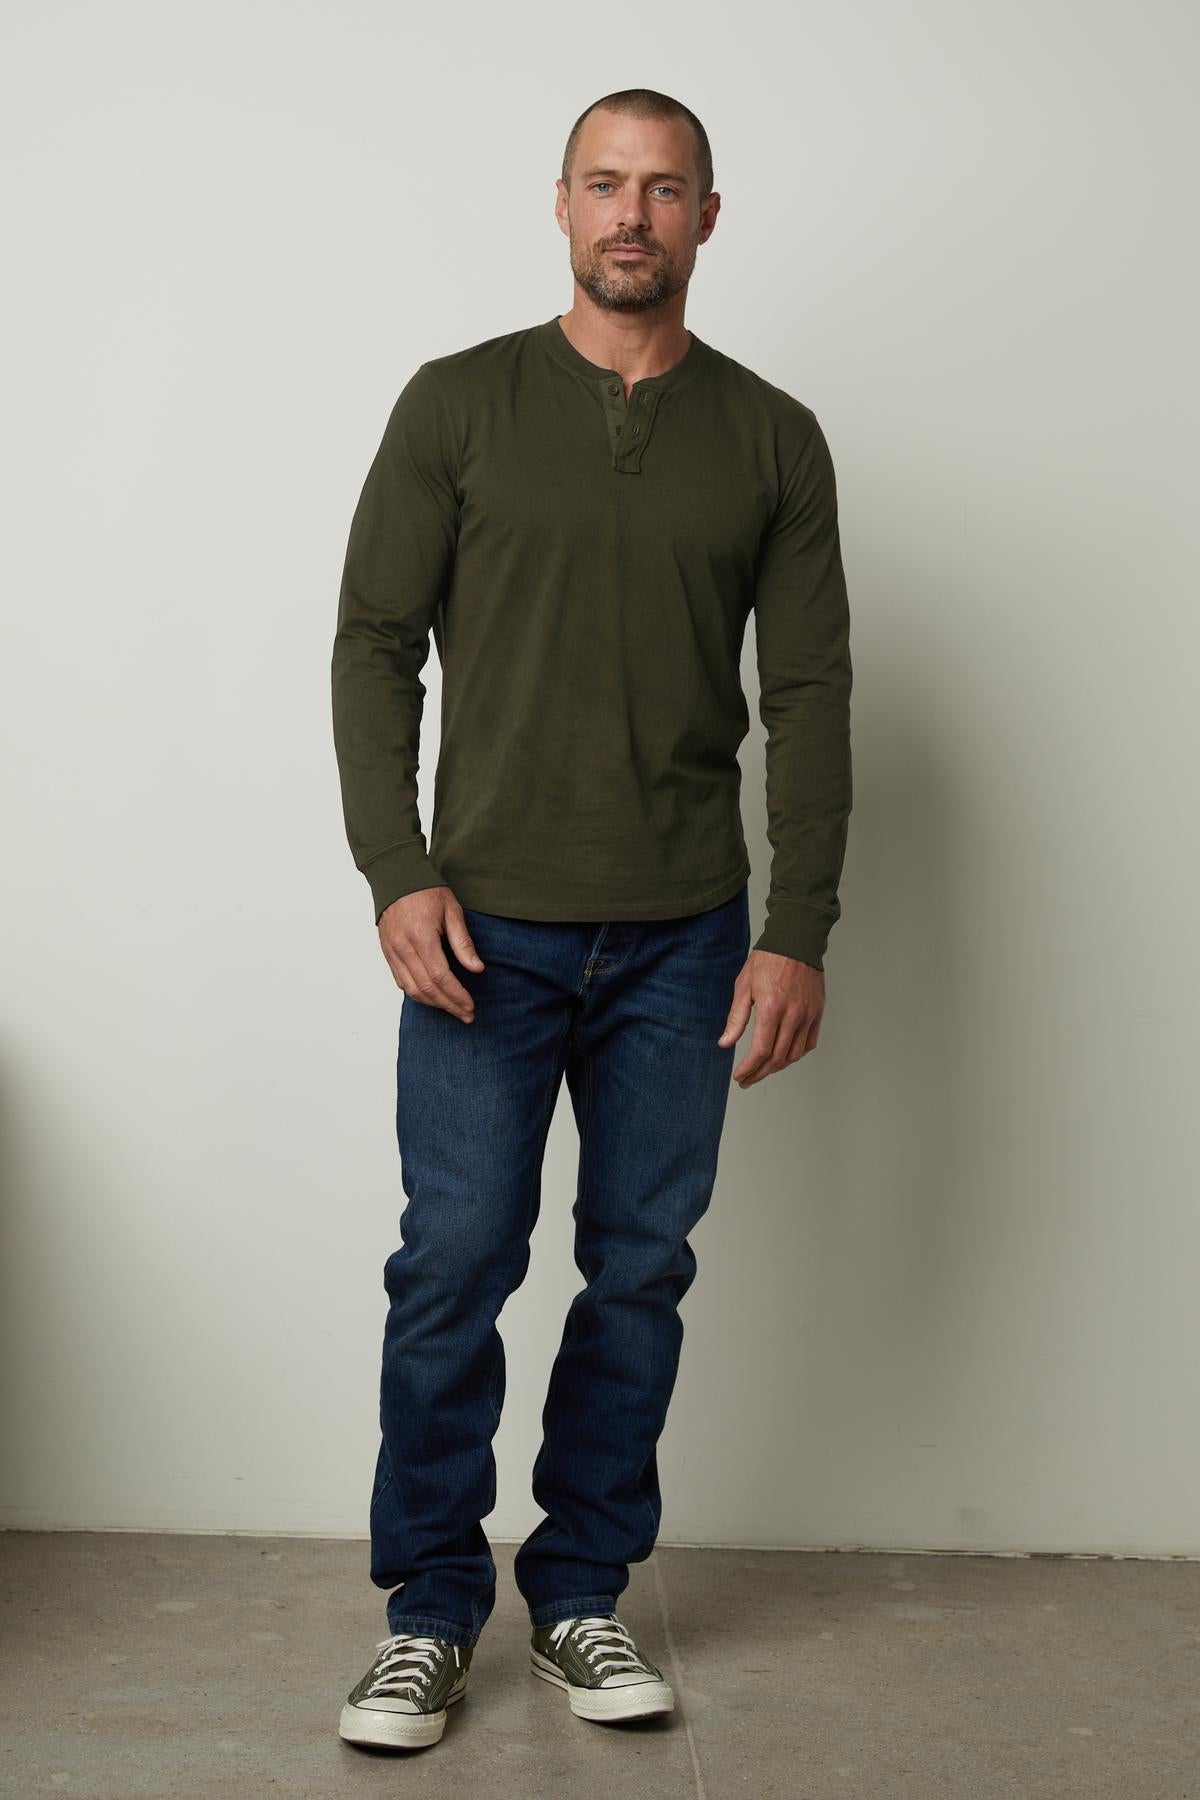 A man wearing a green Velvet by Graham & Spencer Braden Henley shirt made of lightweight cotton fabric and jeans.-35547527151809